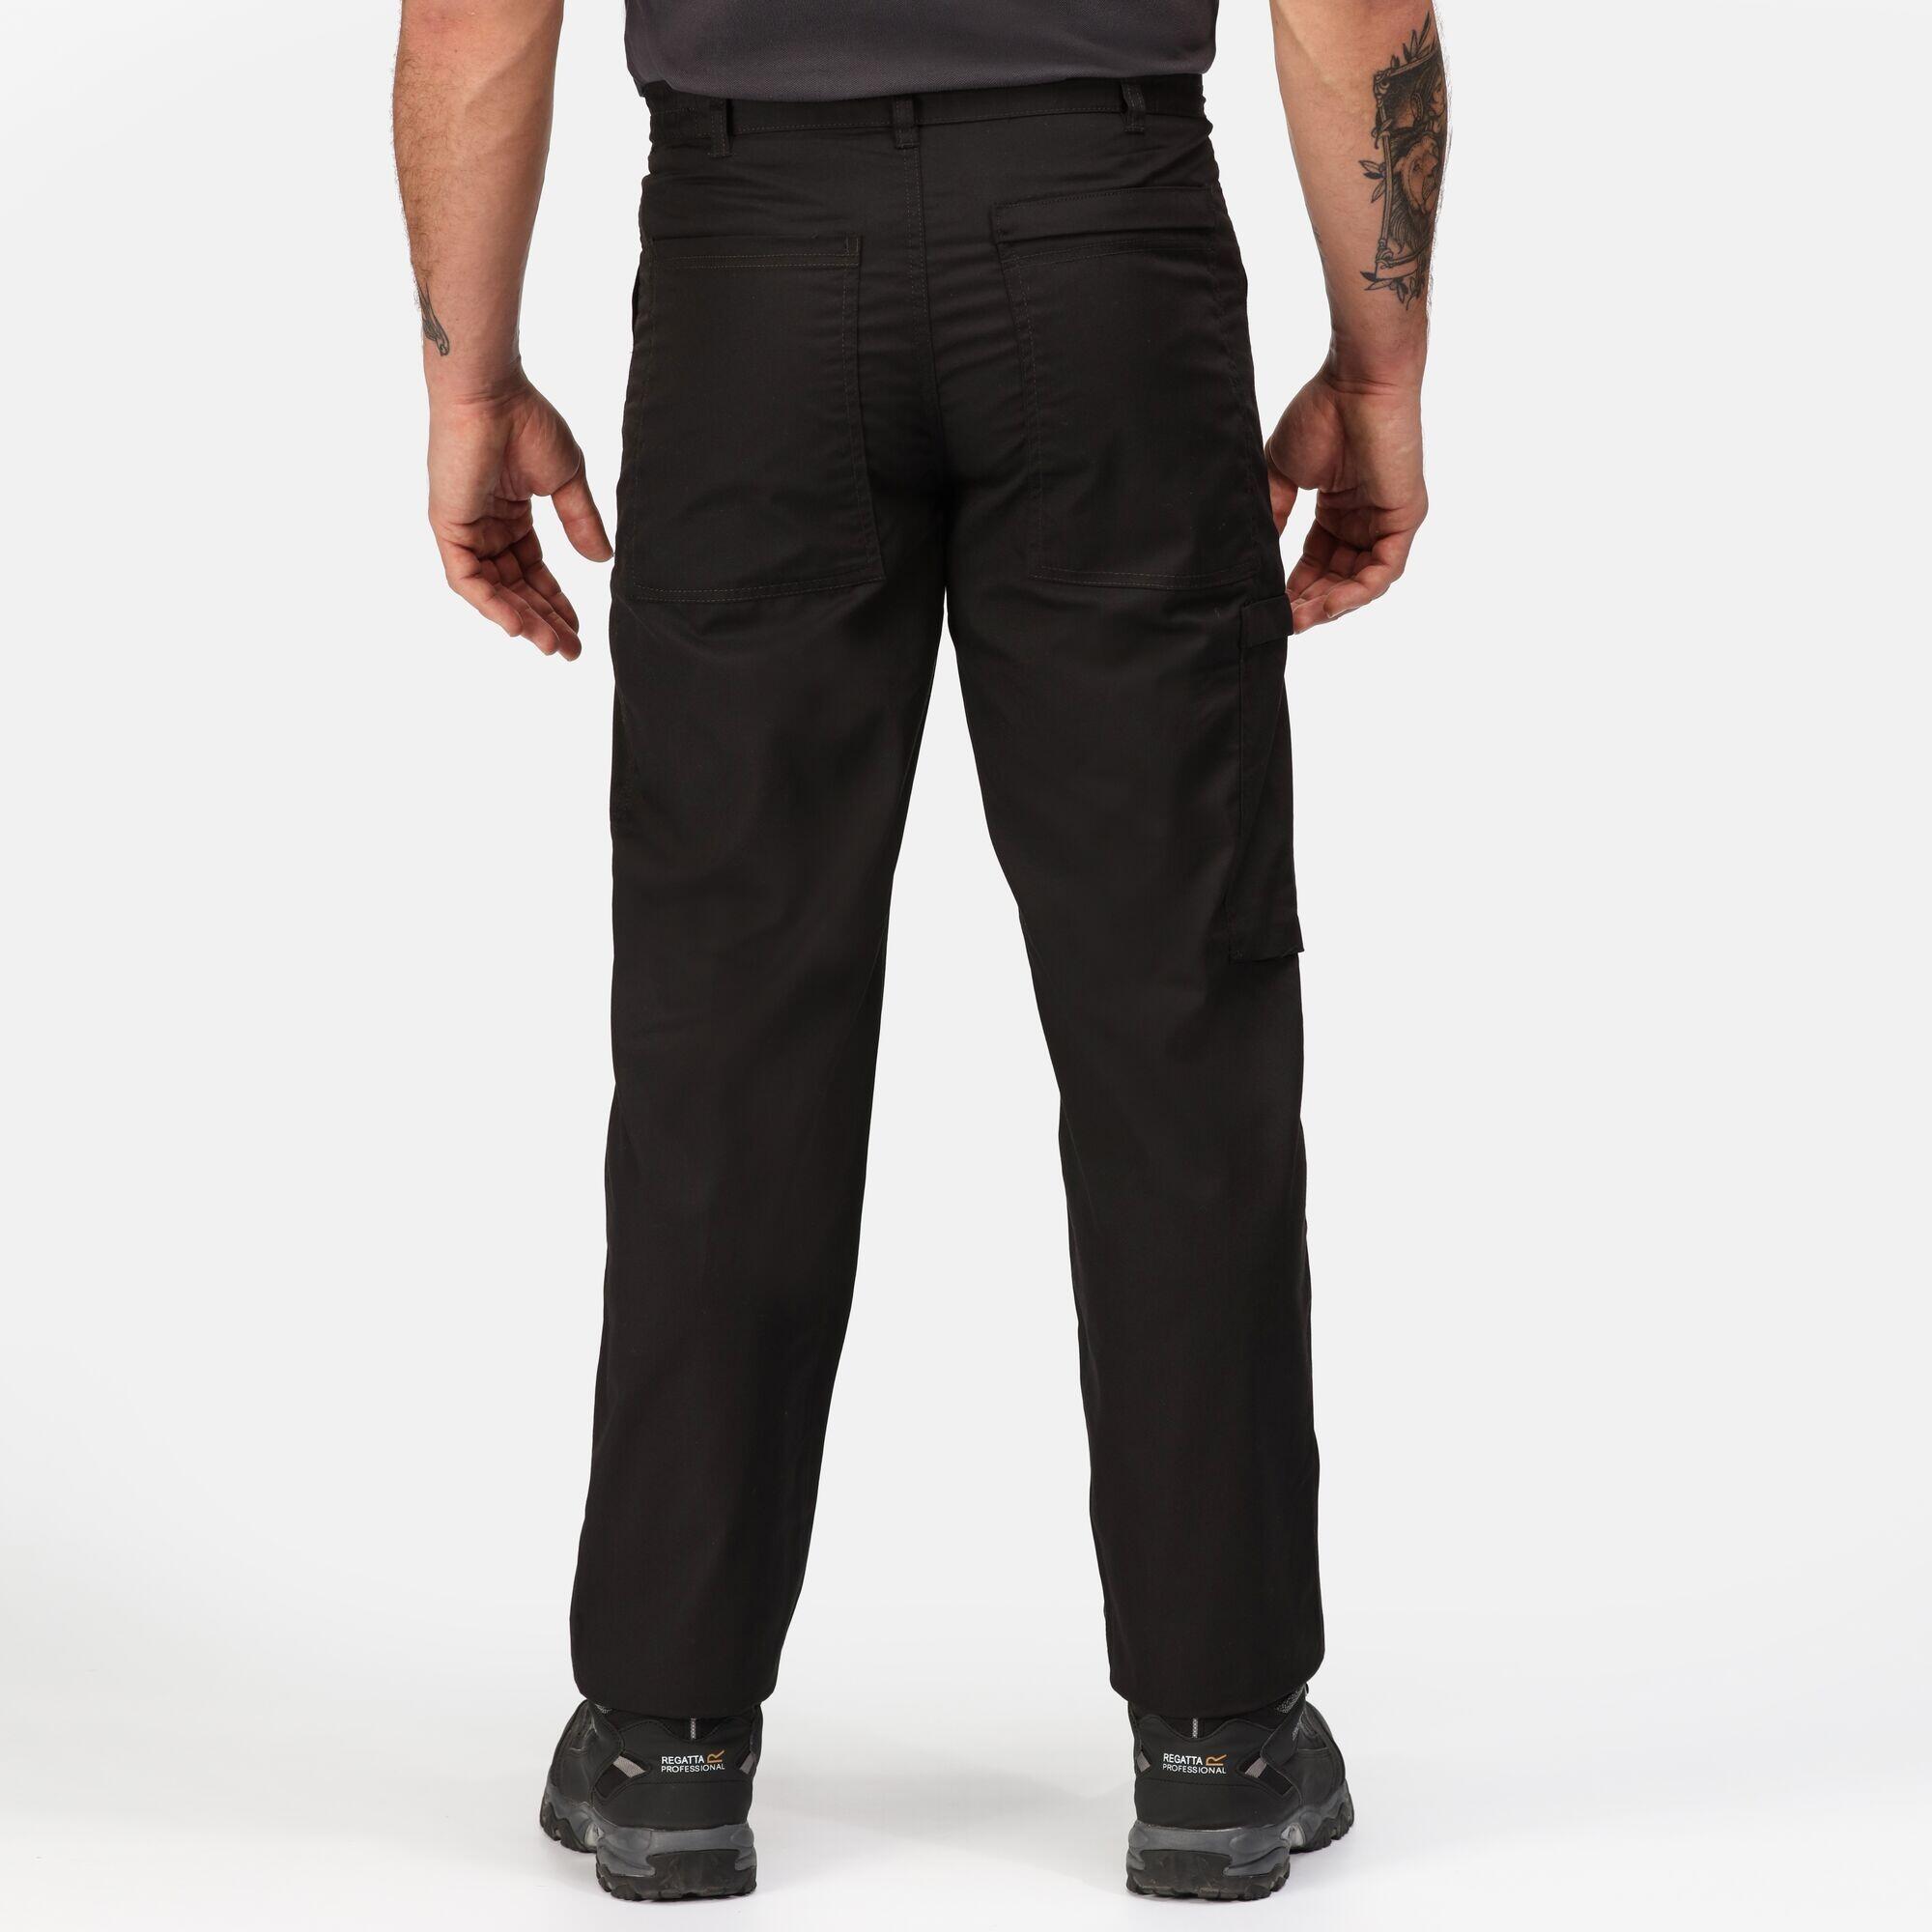 Mens Action Waterproof Trousers (Black) 4/5